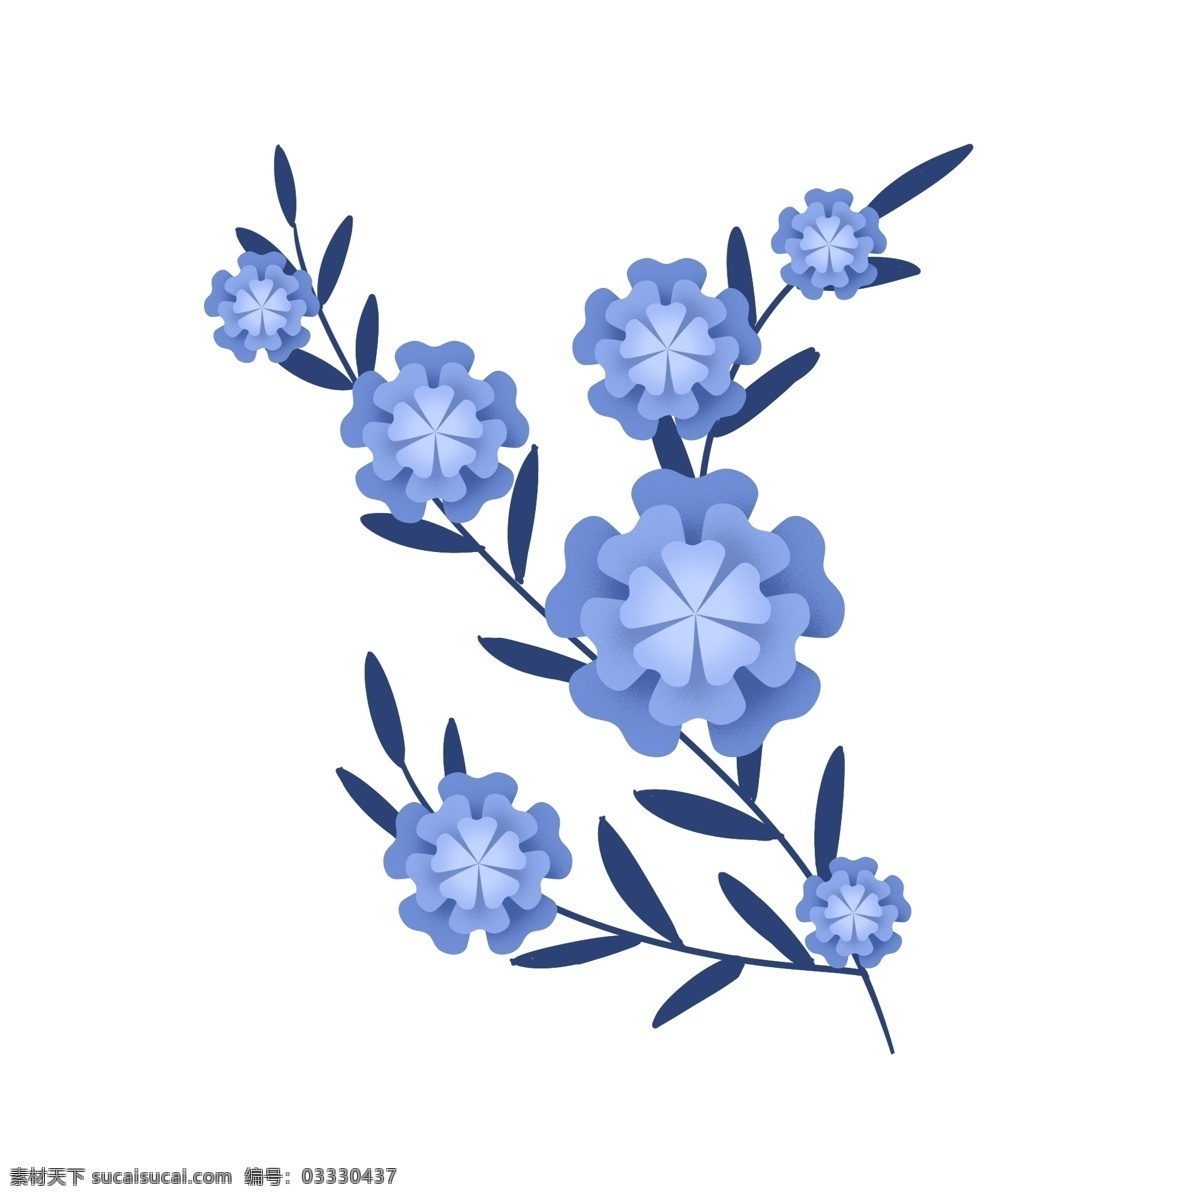 蓝色 渐变 装饰 花朵 元素 花纹 树叶 植物 手绘元素